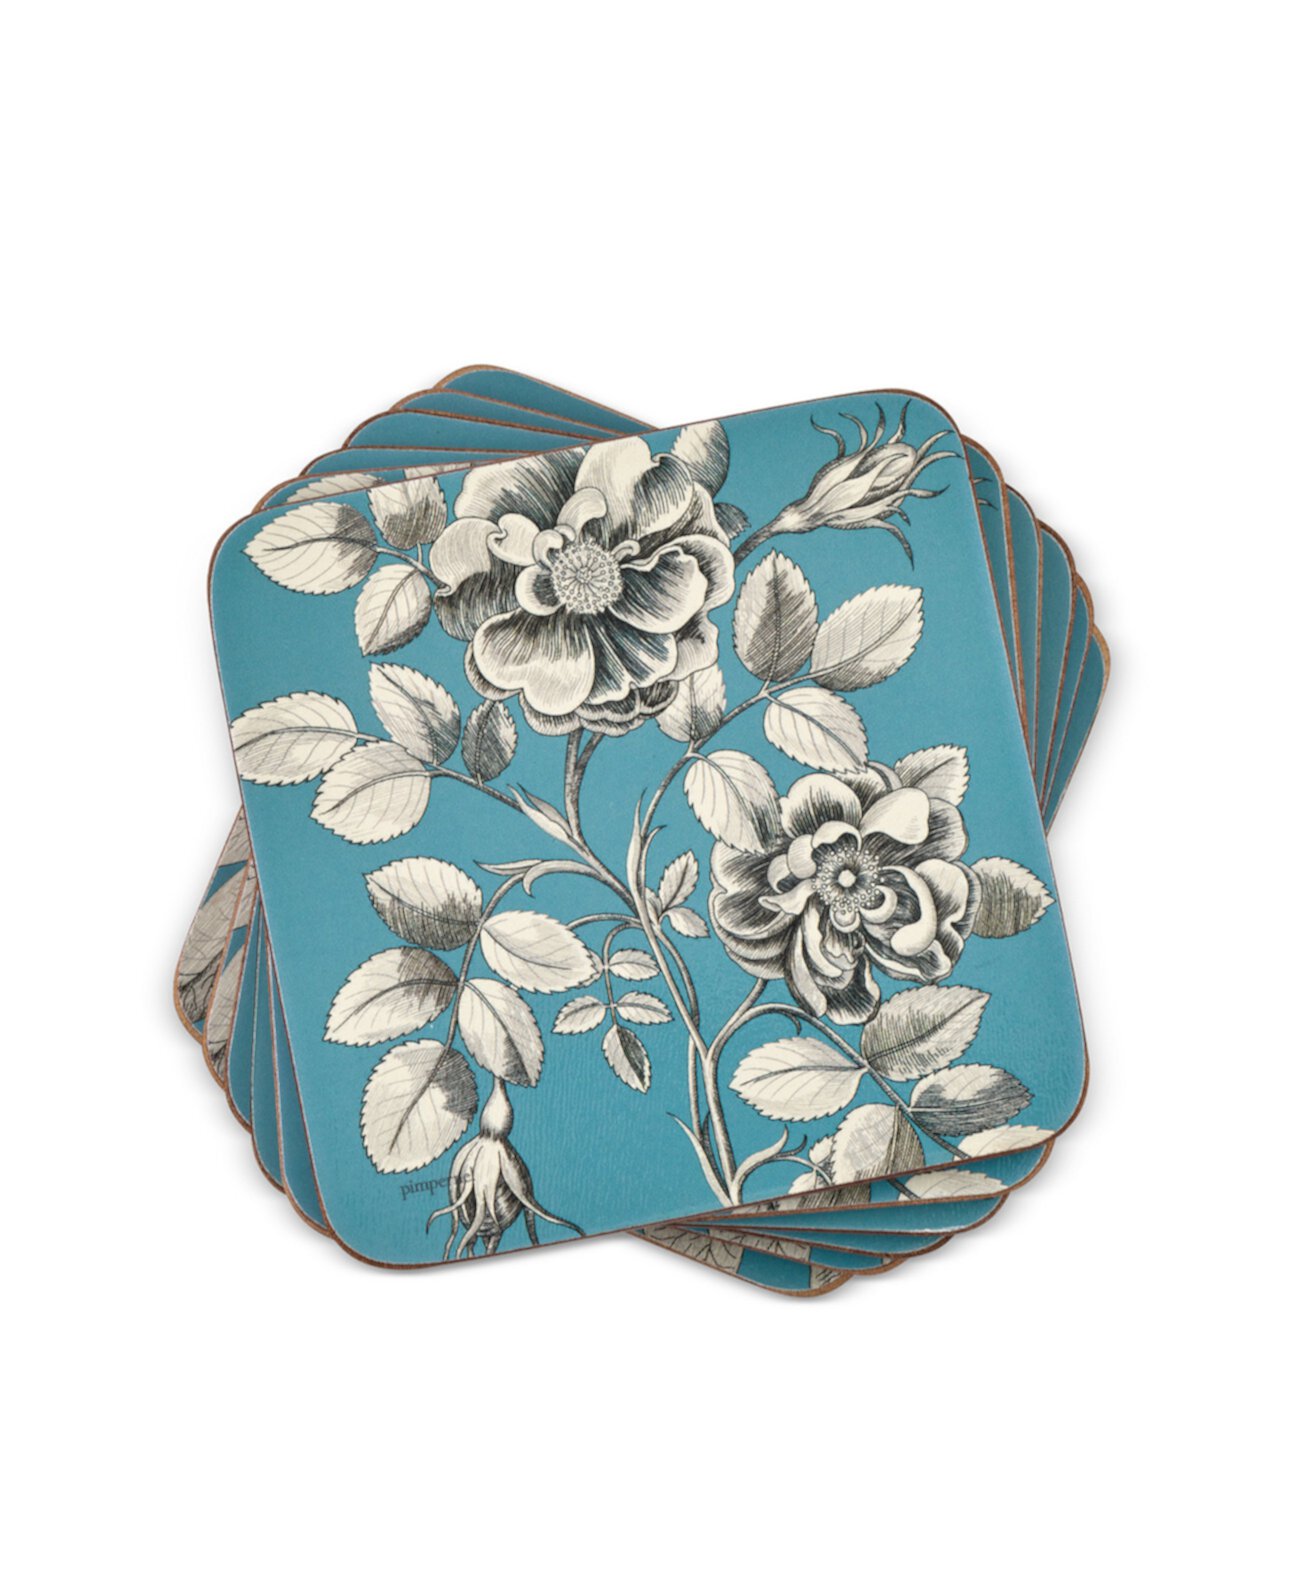 Офорты "Голубые розы" от Sanderson Coasters, набор из 6 шт. Pimpernel